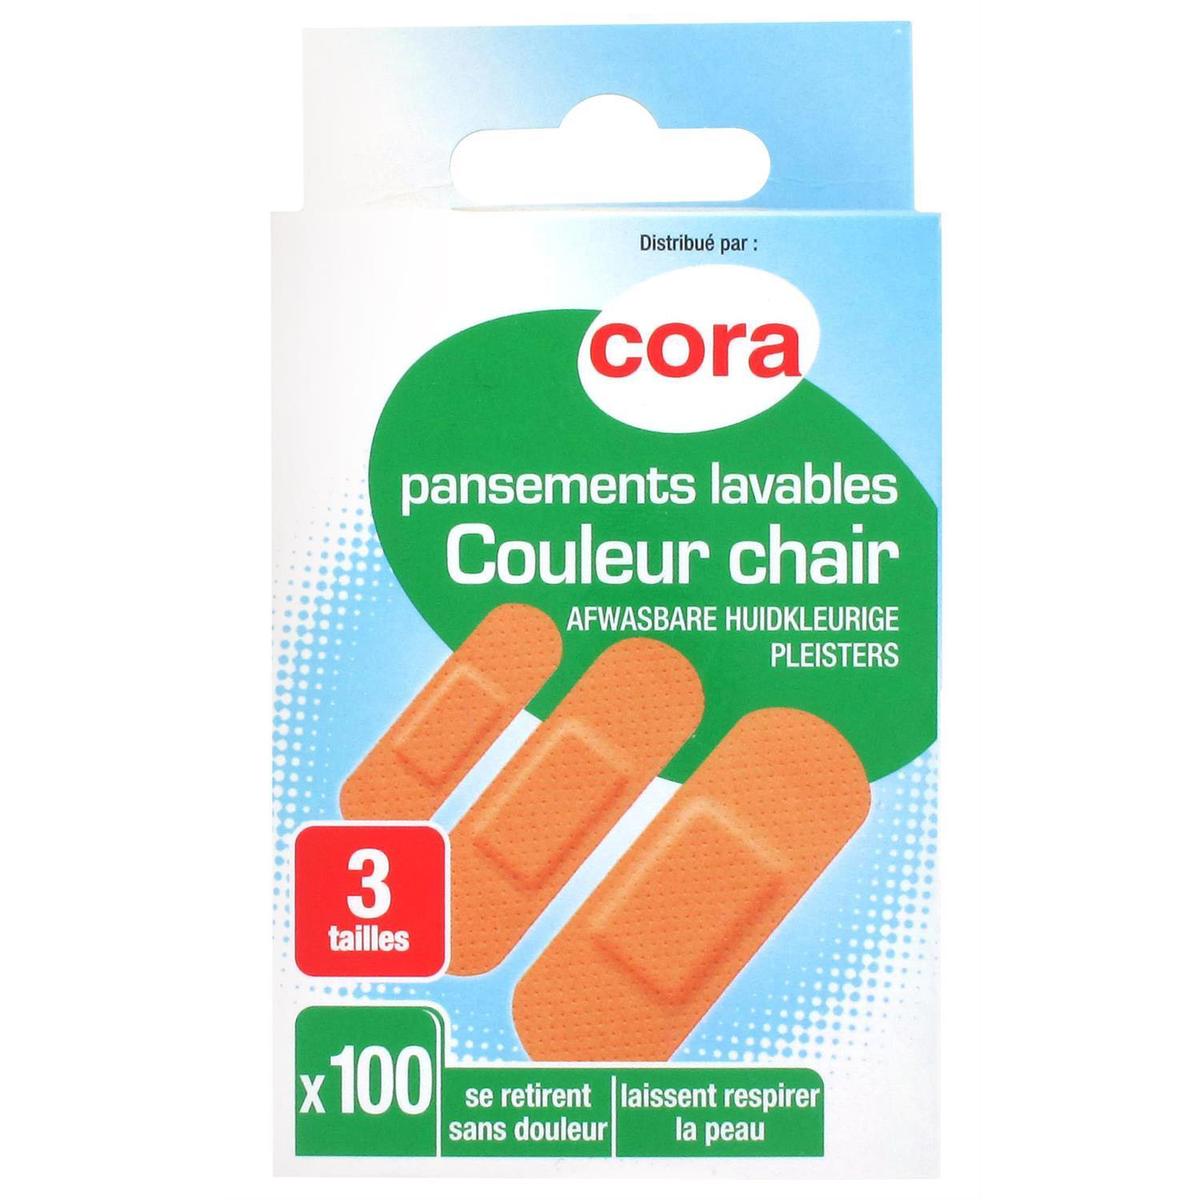 Achat / Vente Cora Pansements lavables - Couleur Chair, 100 pièces